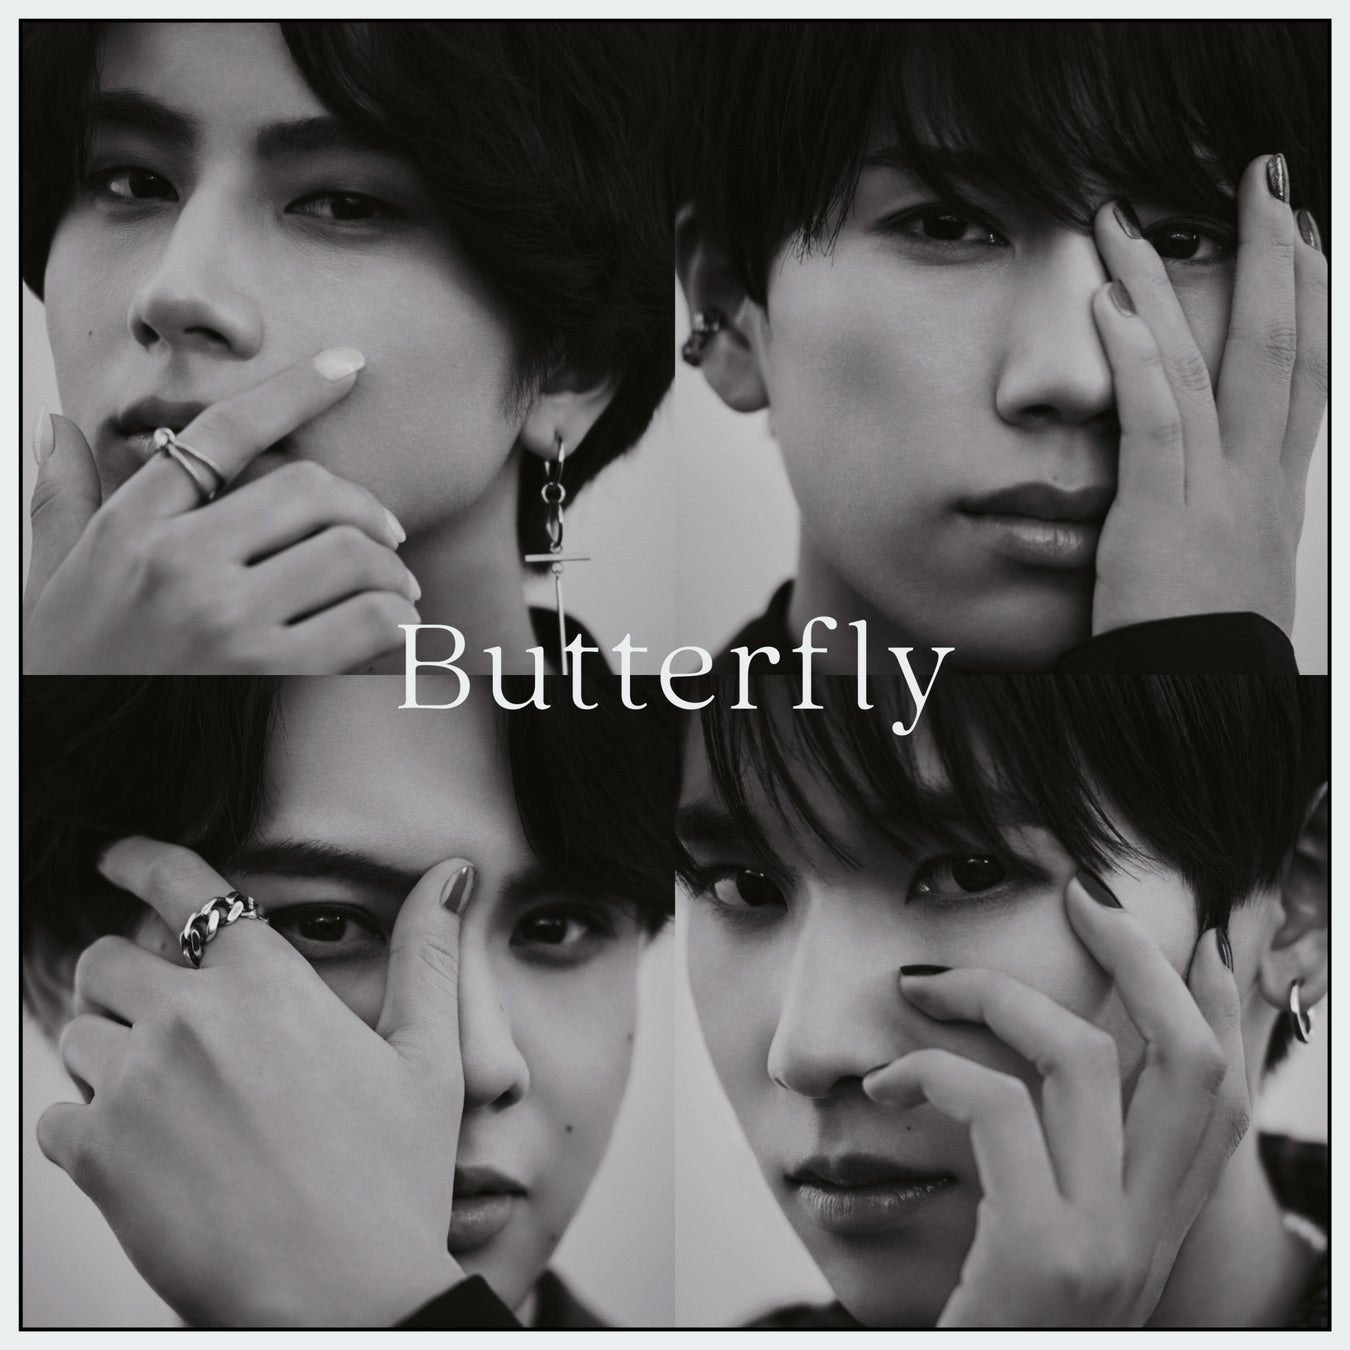 美容に特化した4人組男性ボーカル&ダンスグループ「BBM(ビービーエム)」本日12/14にデビューデジタルシングル「Butterfly」をリリース!21:00にはMusic Videoをプレミア公開!のサブ画像1